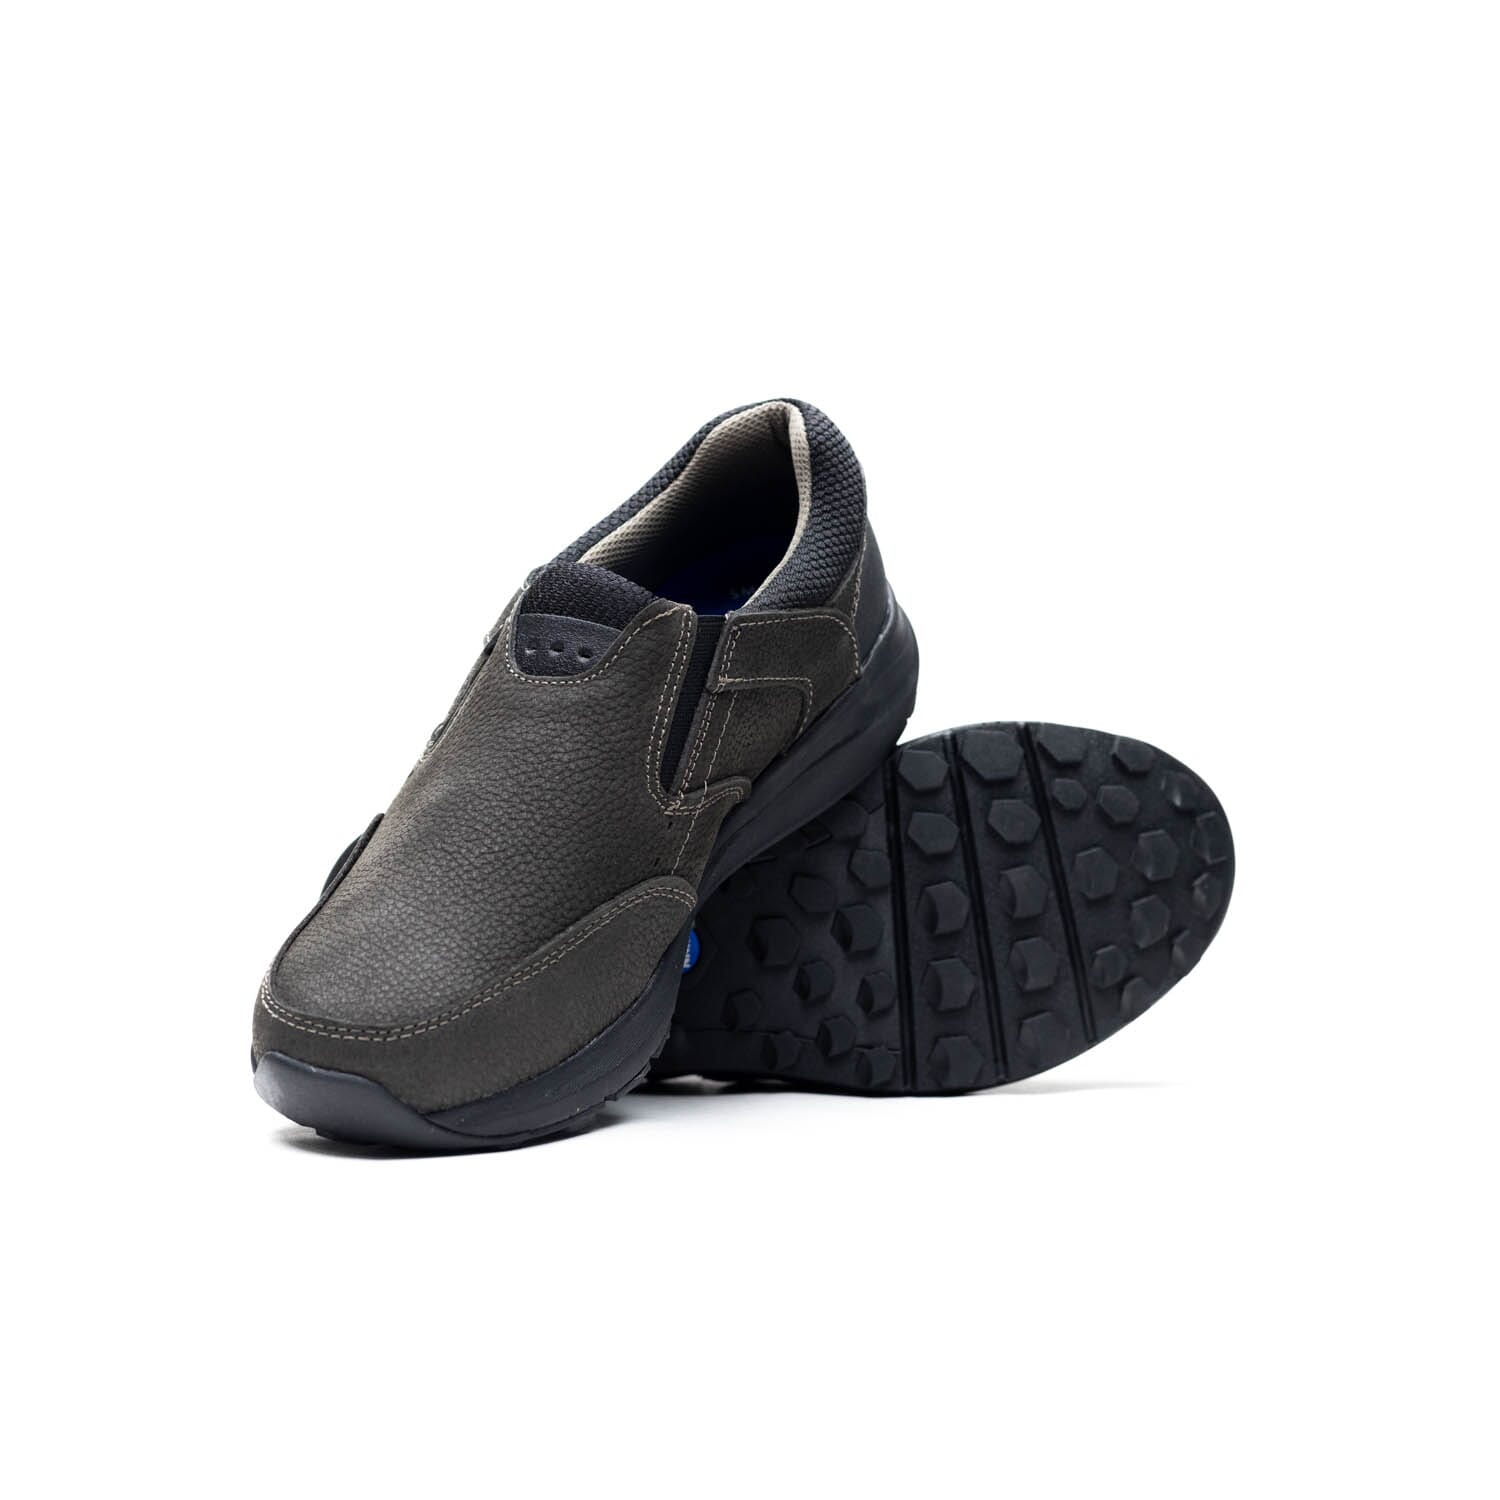 NUNN BUSH BY FLORSHEIM -EXCURSION SLIP -CHARCOAL – Perocili Shoes